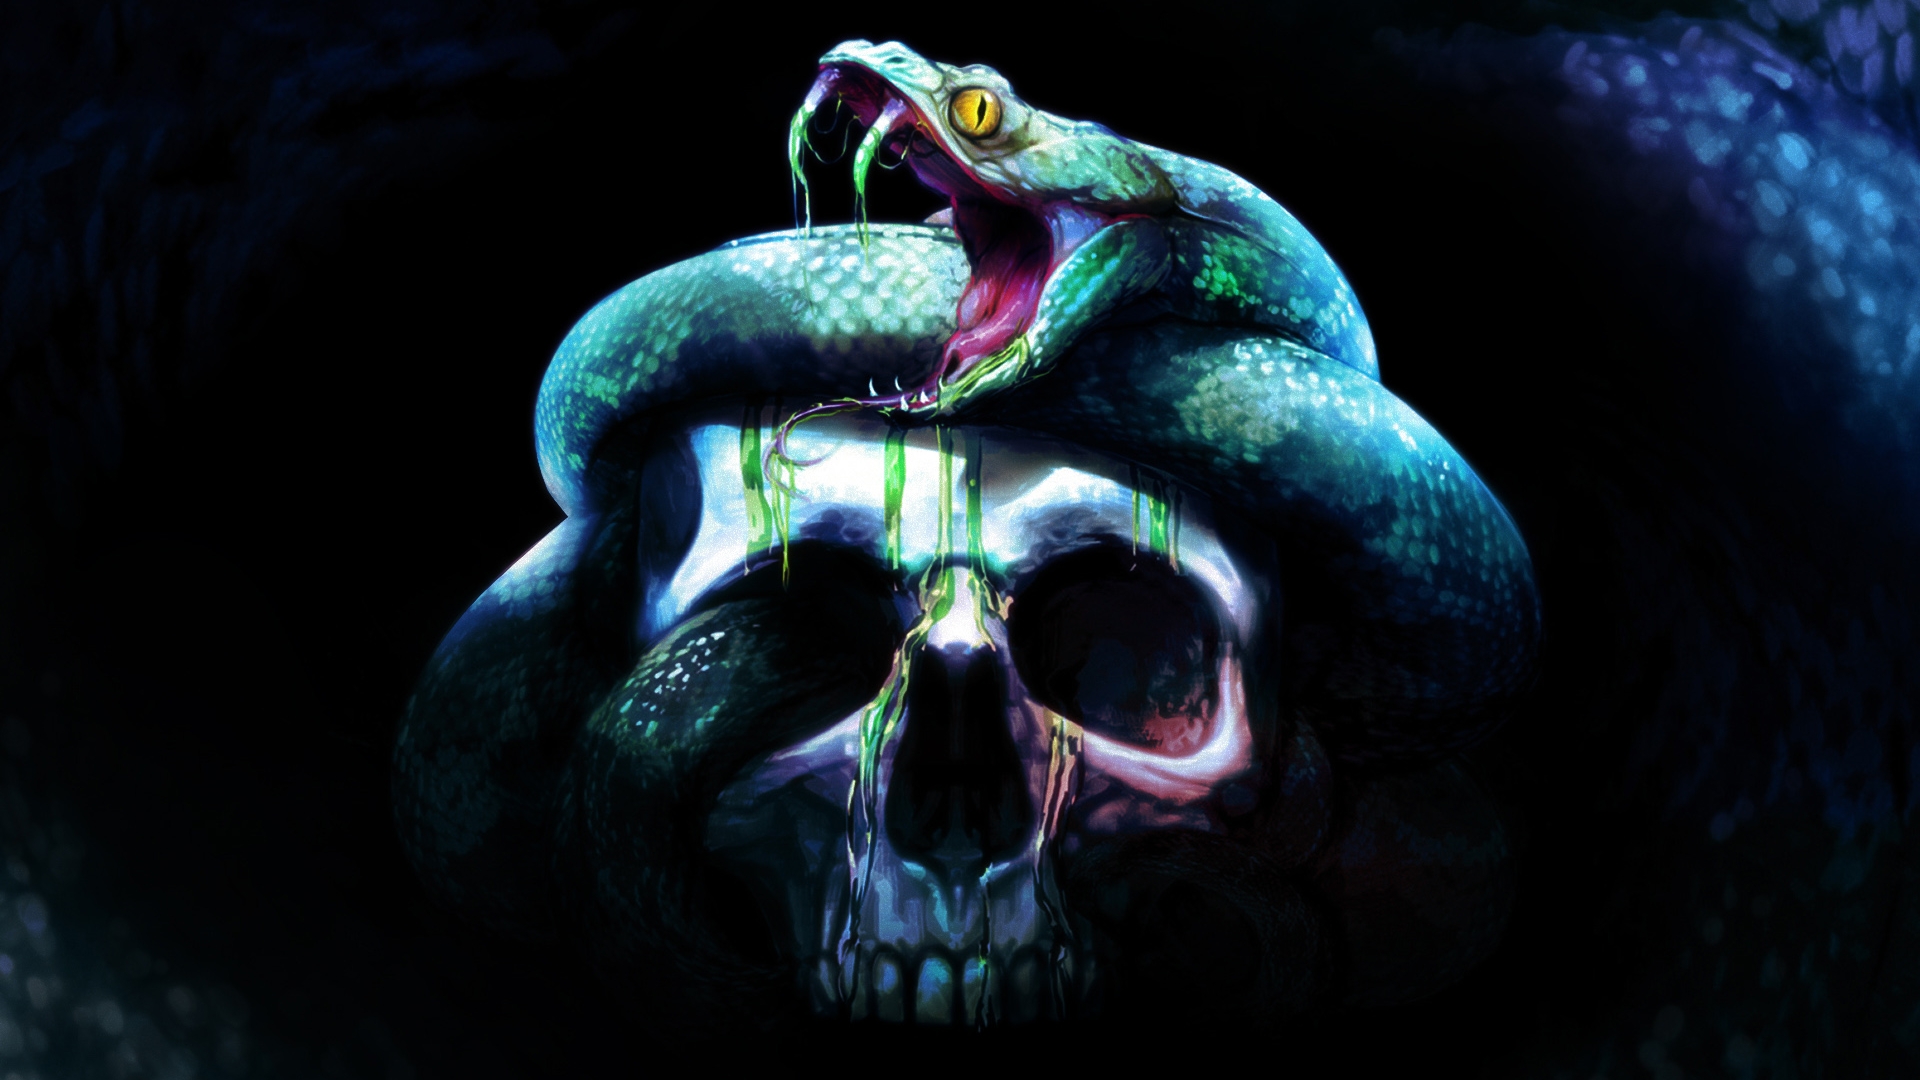 Download mobile wallpaper Dark, Snake, Skull for free.